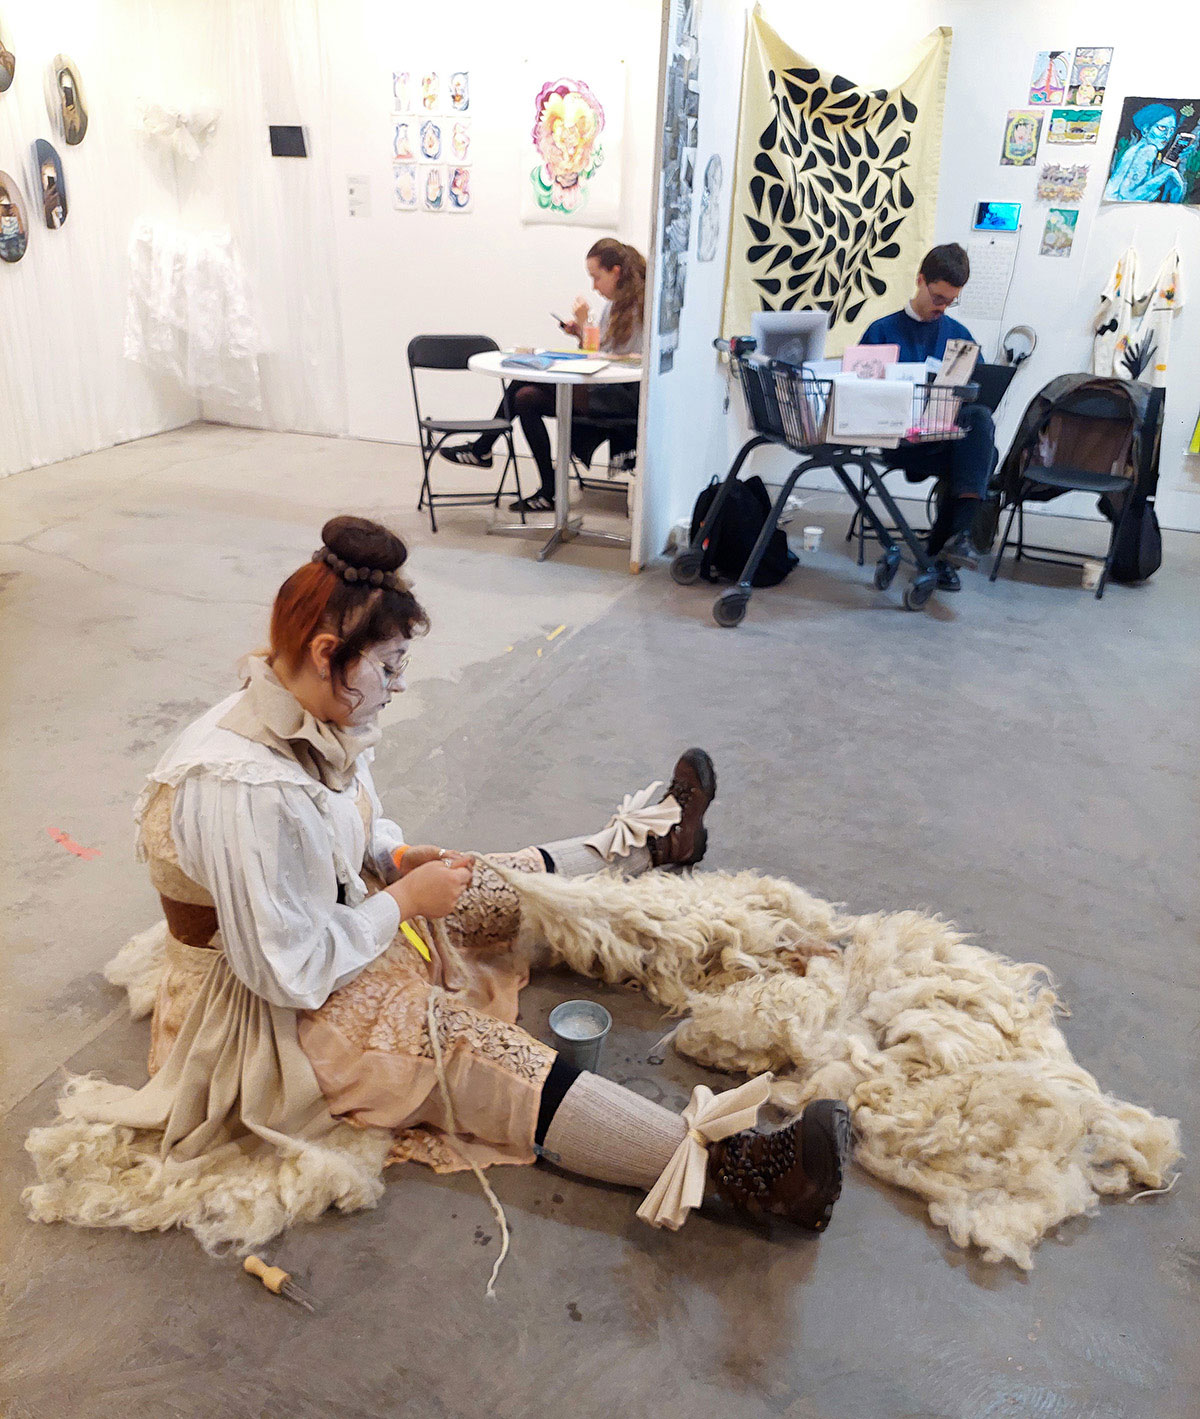 Foto. En kvinna med vitsminkat ansikte och rödaktigt uppsatt hår sitter på golvet och arbetar med vad som ser ut som en fårskinnsfäll. I bakgrunden syns personer sittandes i montrar med konst på väggarna. 